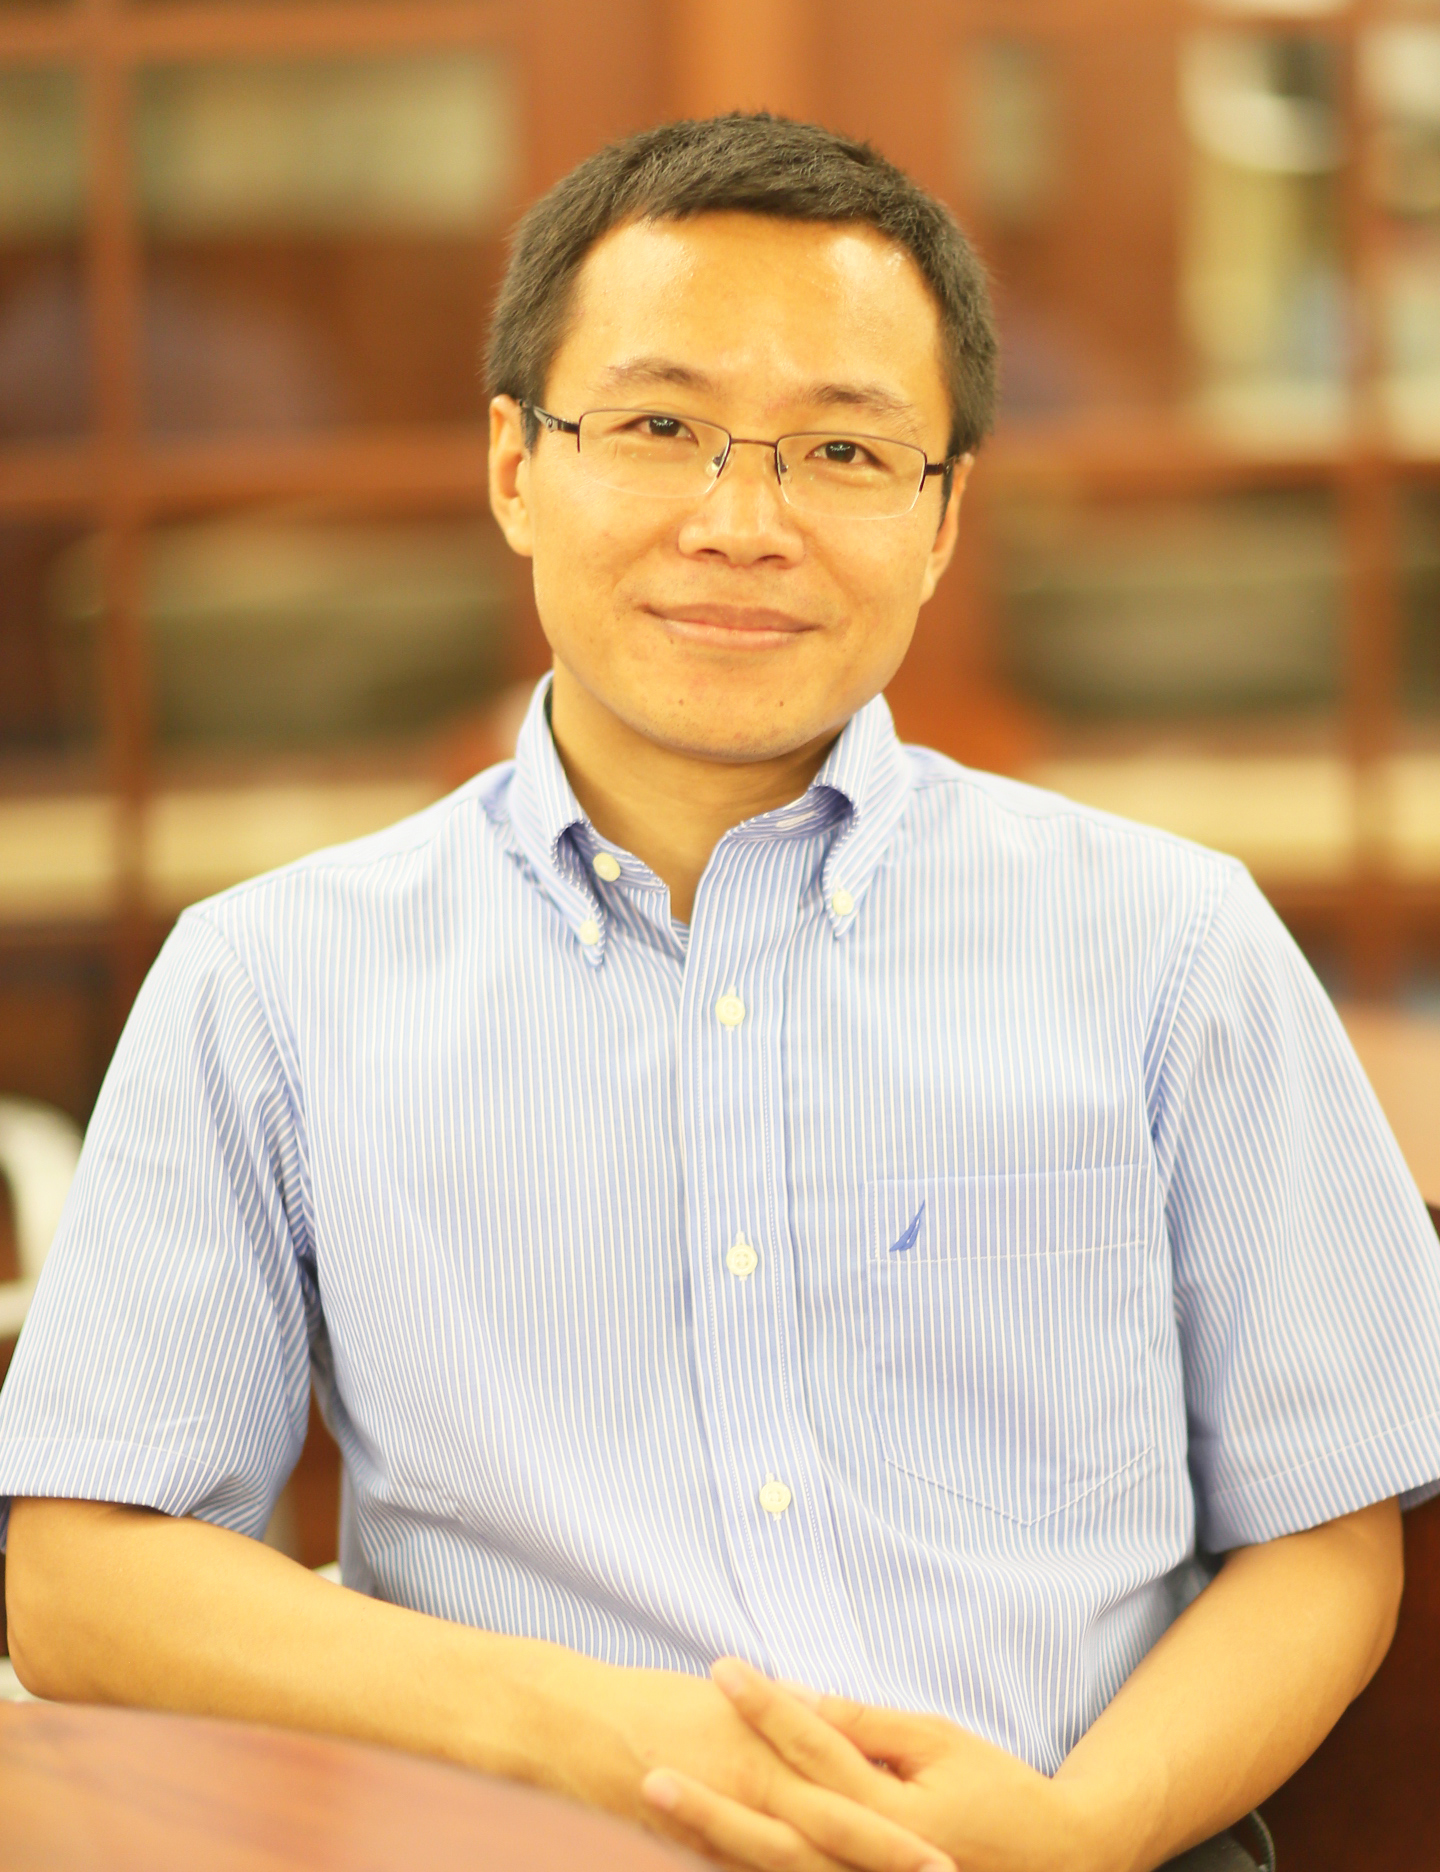 Kaifu Chen, PhD